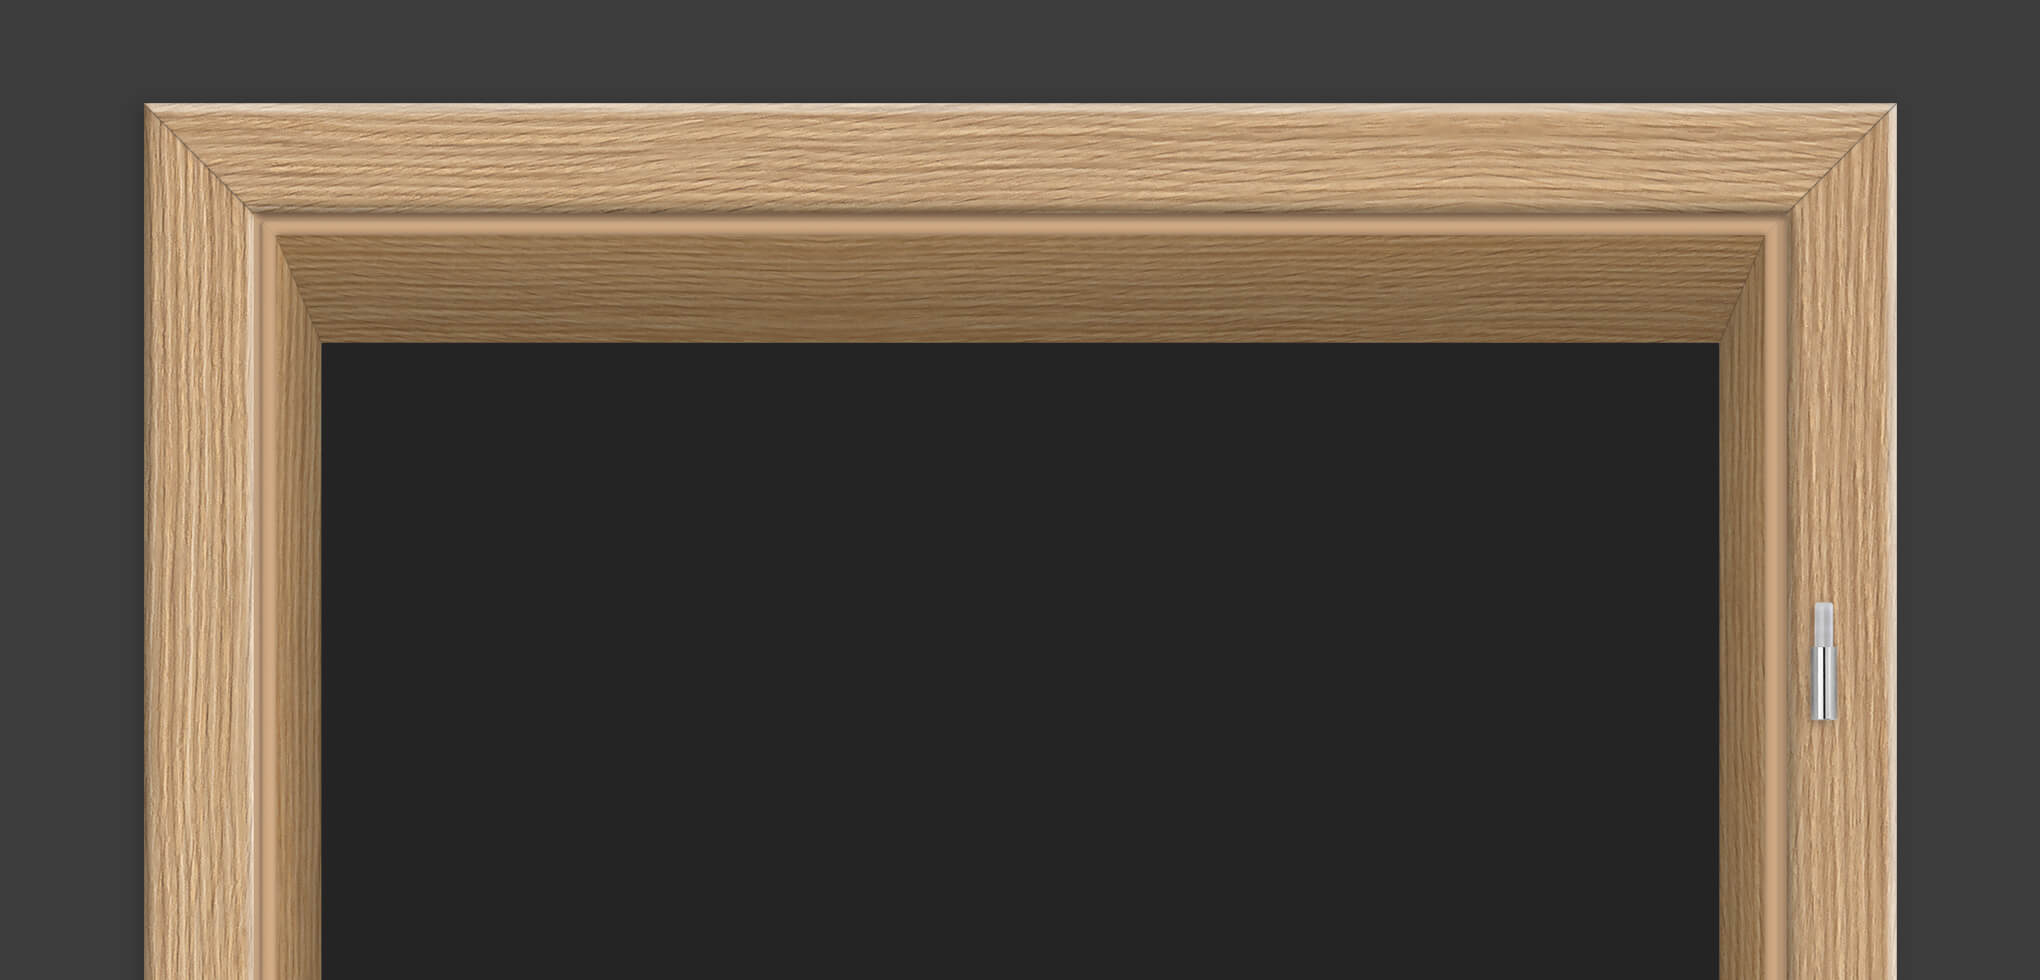 Zargen mit Rundkante. In Holzdesigns mit CPL-Oberfläche – viele mit einer spürbaren Holzmaserung veredelt.